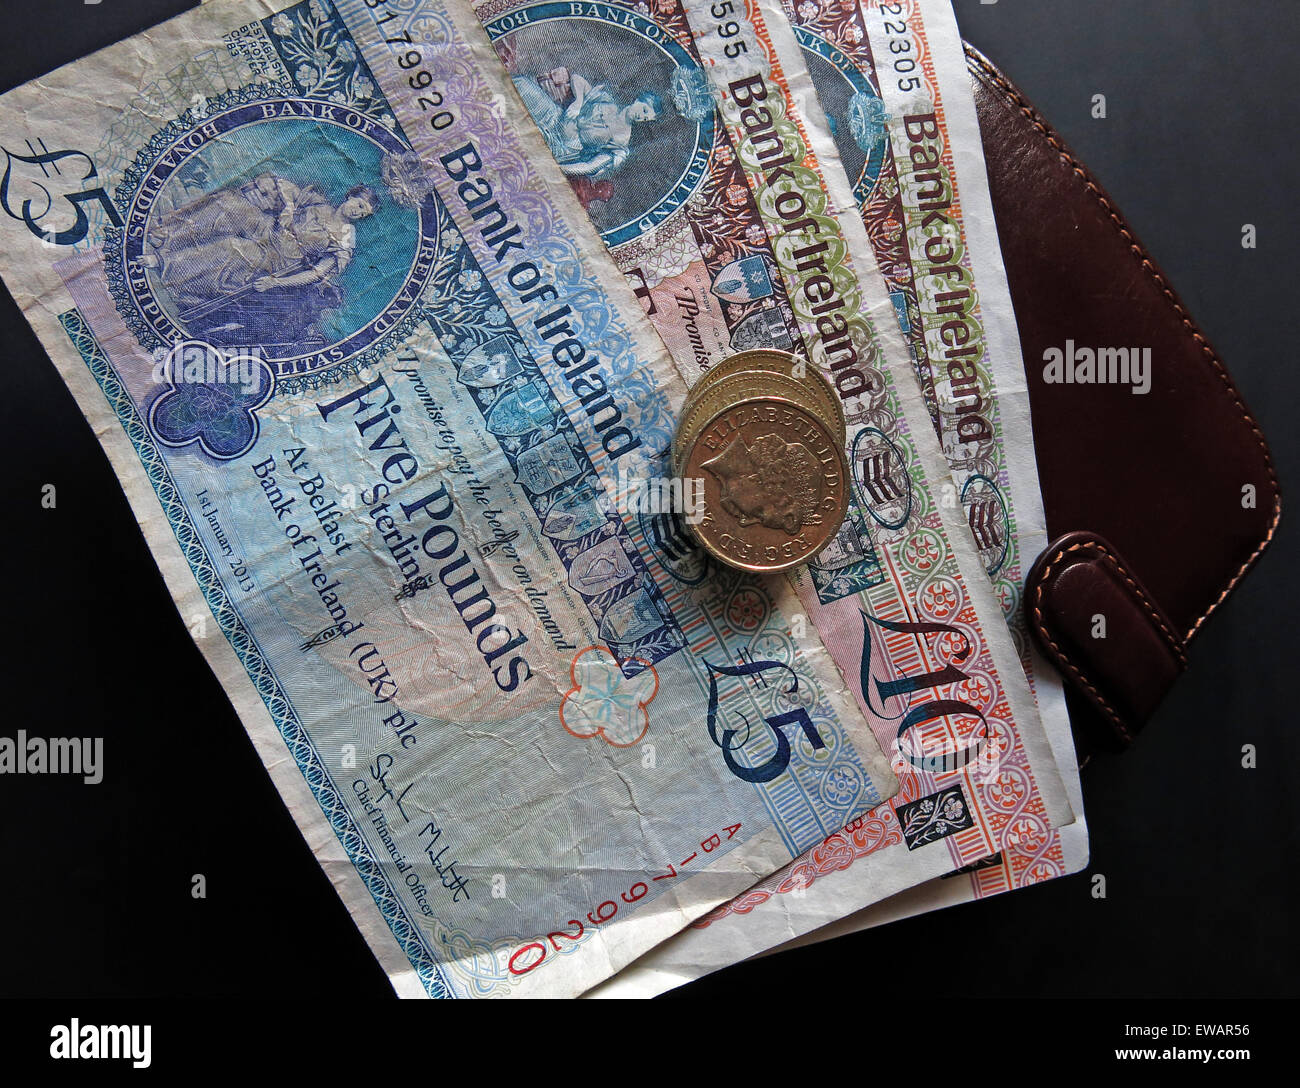 In Irlanda del Nord a 5 sterline, £10 note e cancelletto monete a corso legale della Banca di Irlanda Belfast, accanto un portafogli Foto Stock